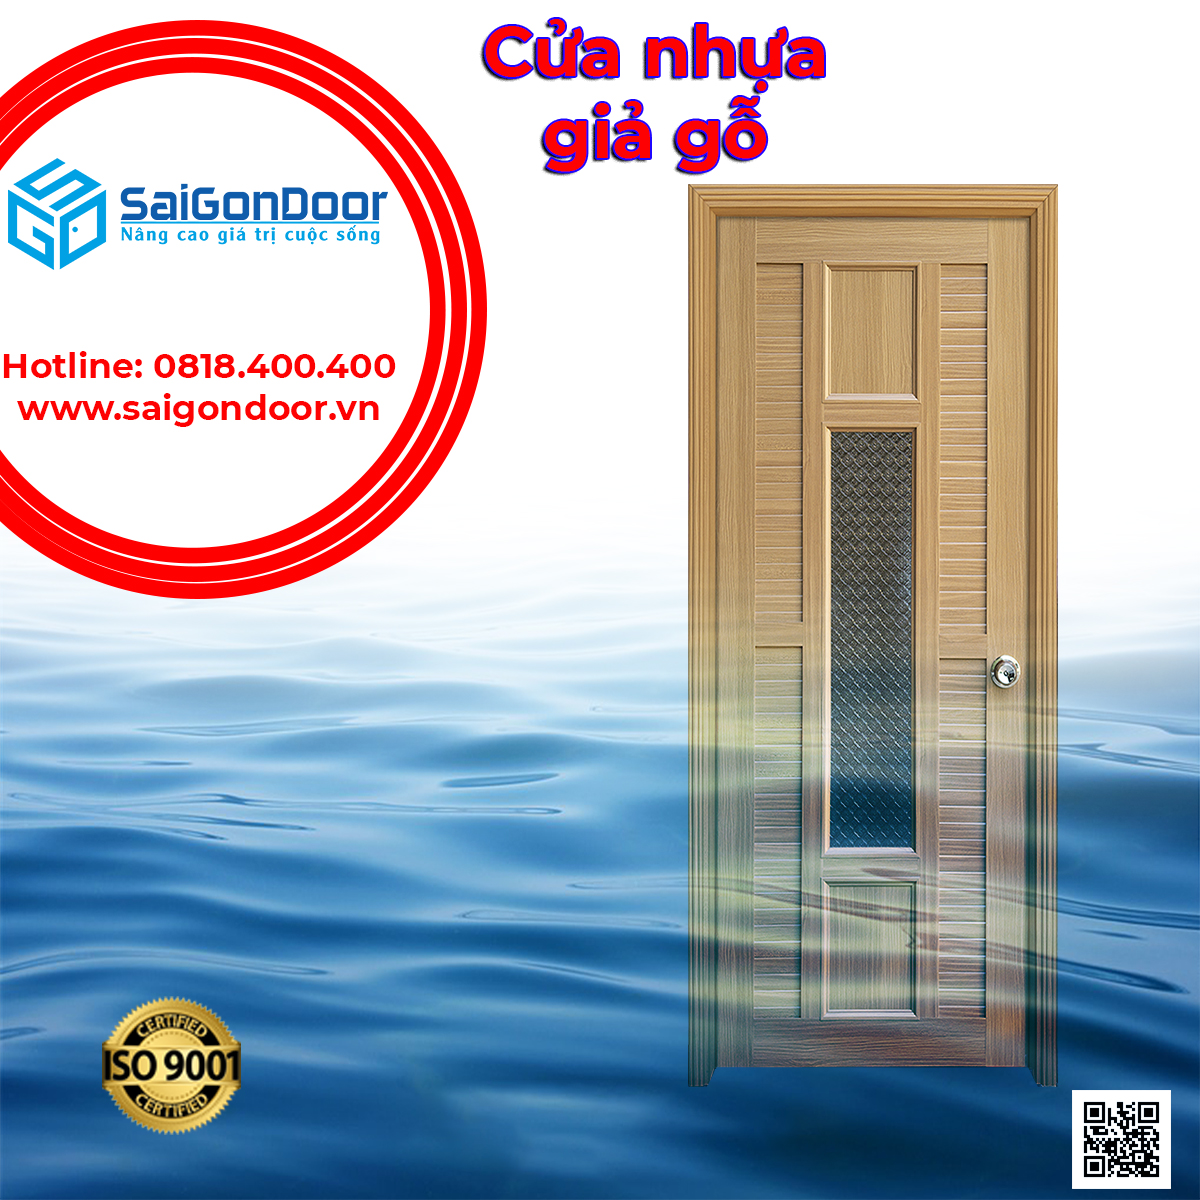 Mẫu cửa nhựa giả gỗ chịu nước đẹp SaiGonDoor